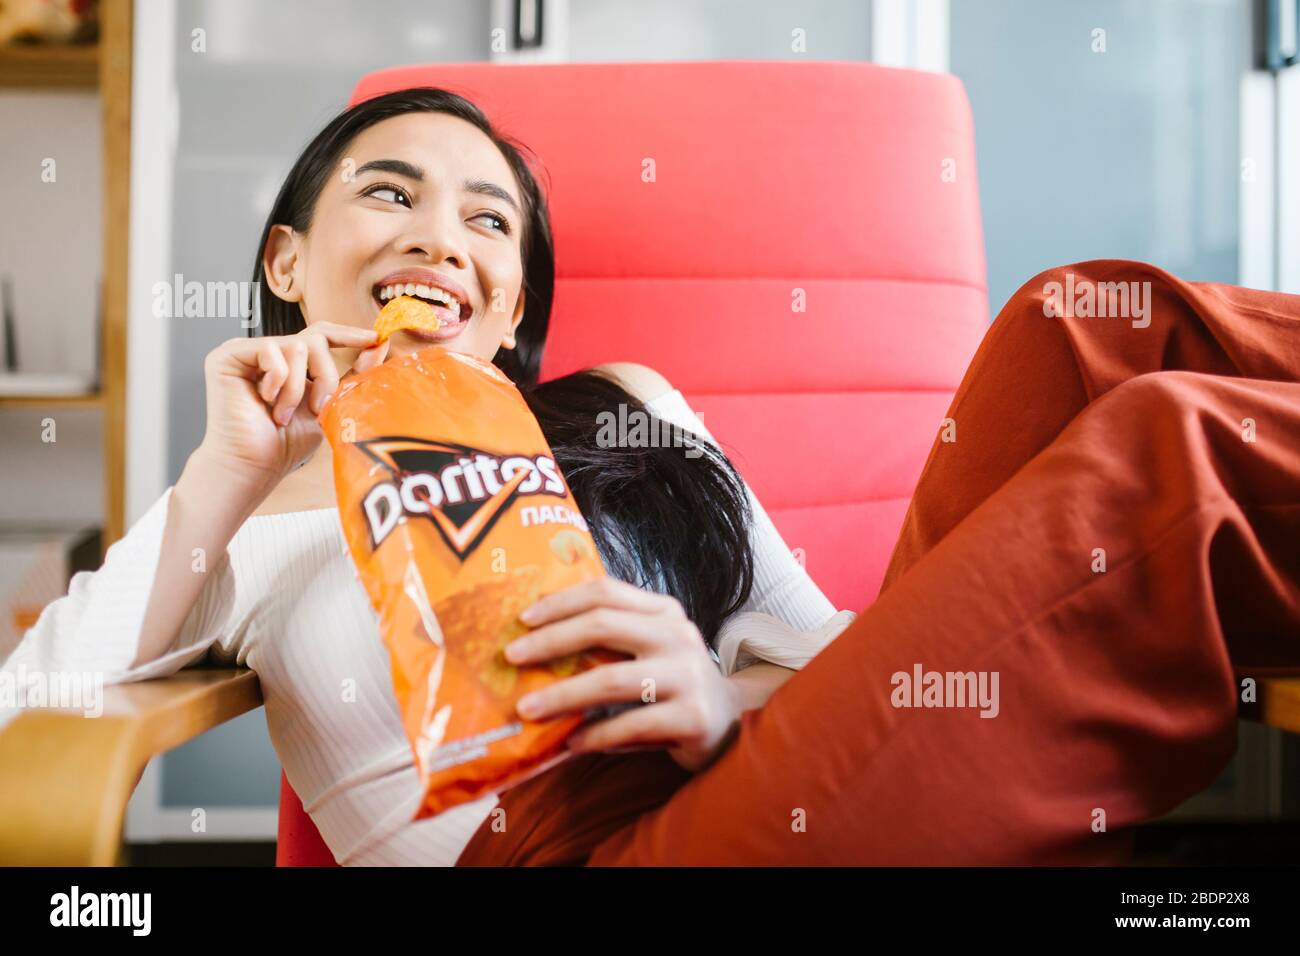 Beautiful asian woman eating Doritos. Stock Photo